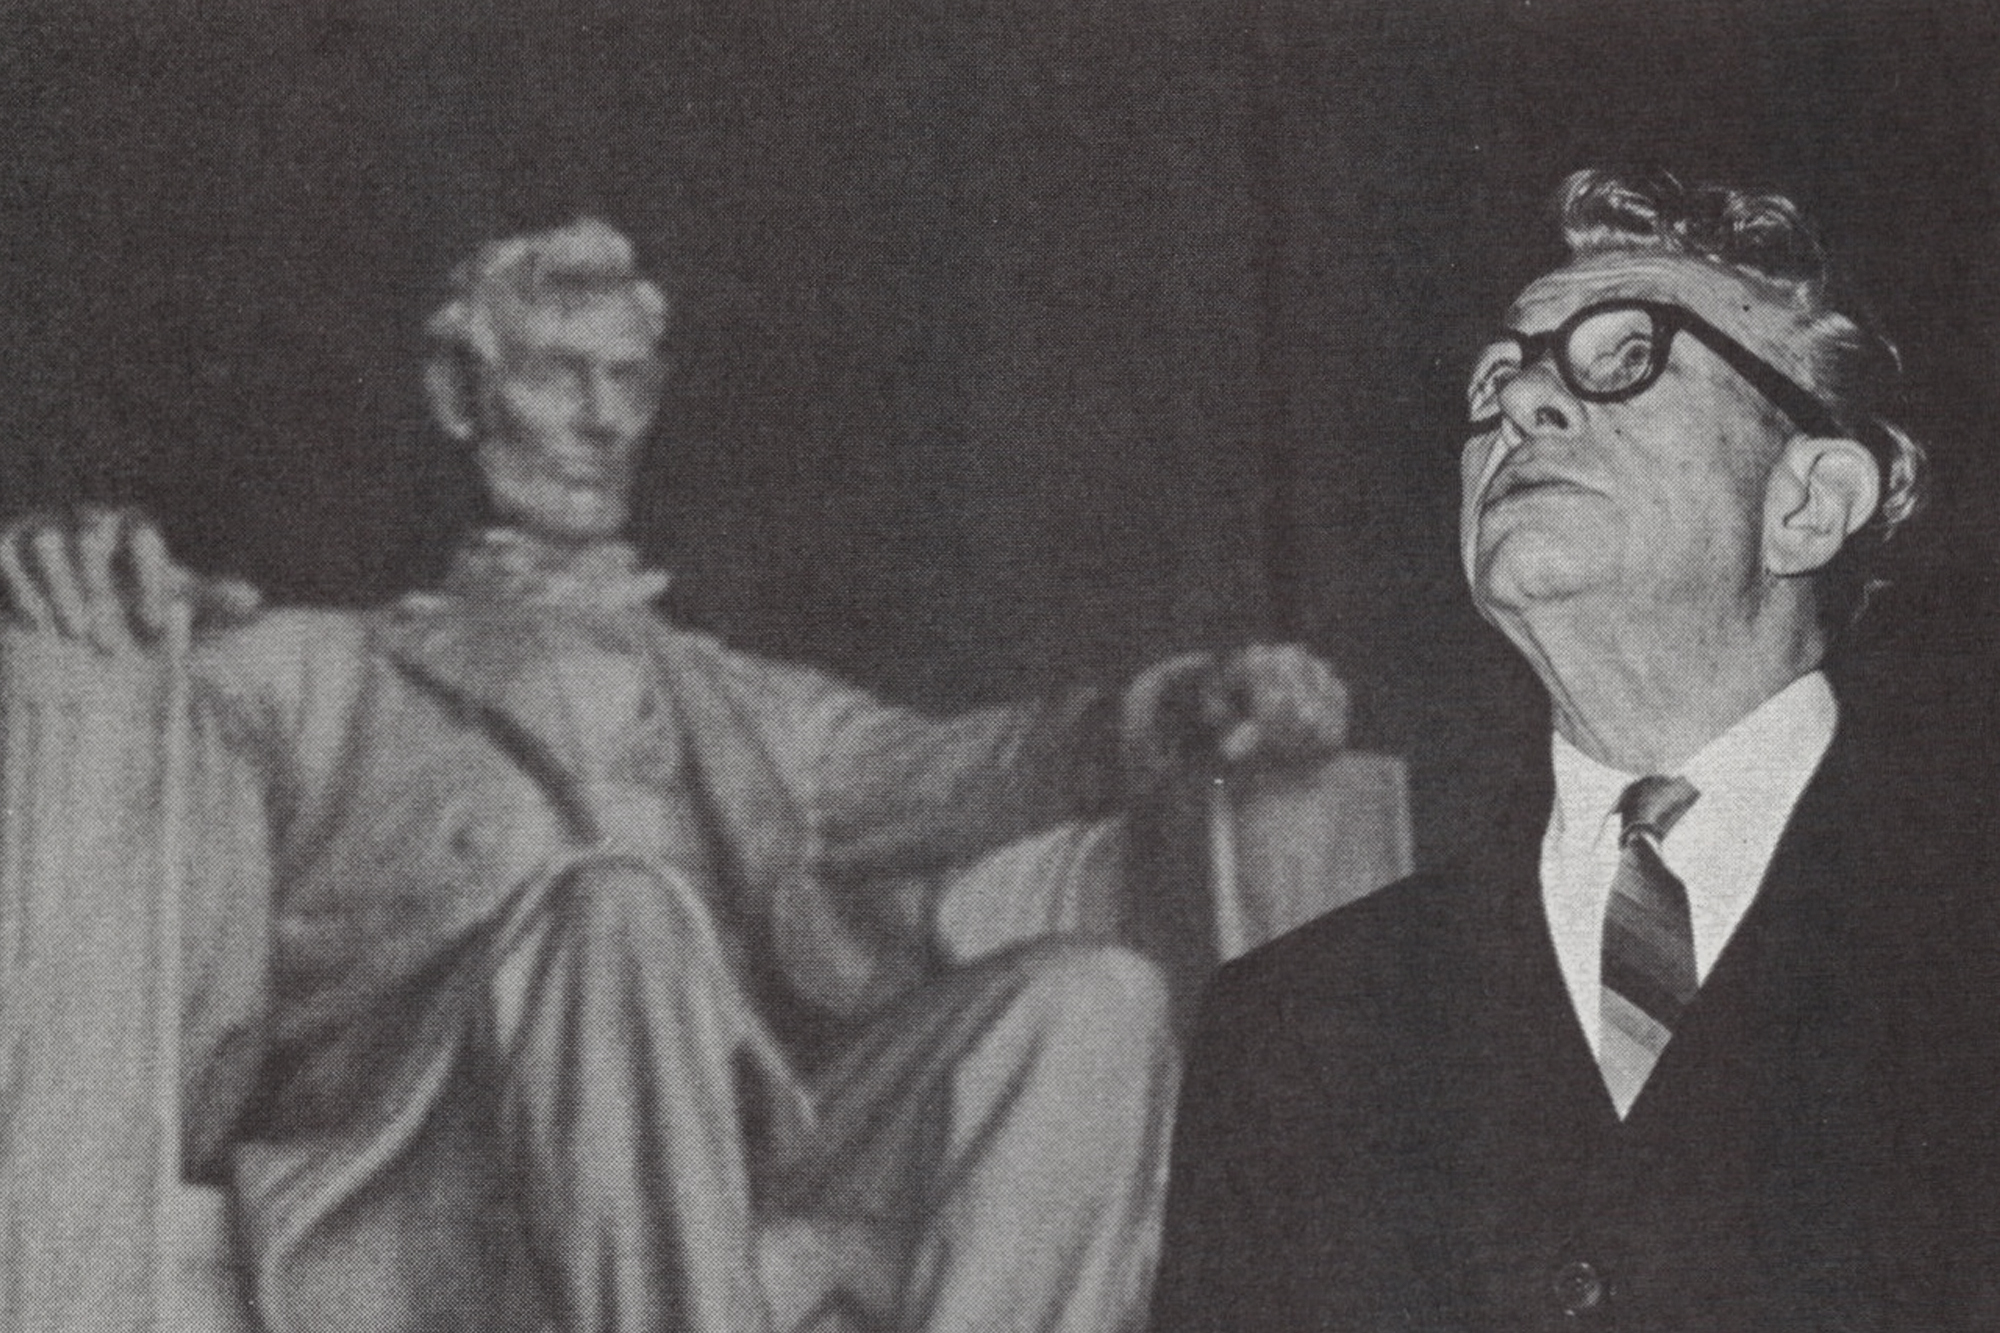 Sen. Everett Dirksen at Lincoln Memorial